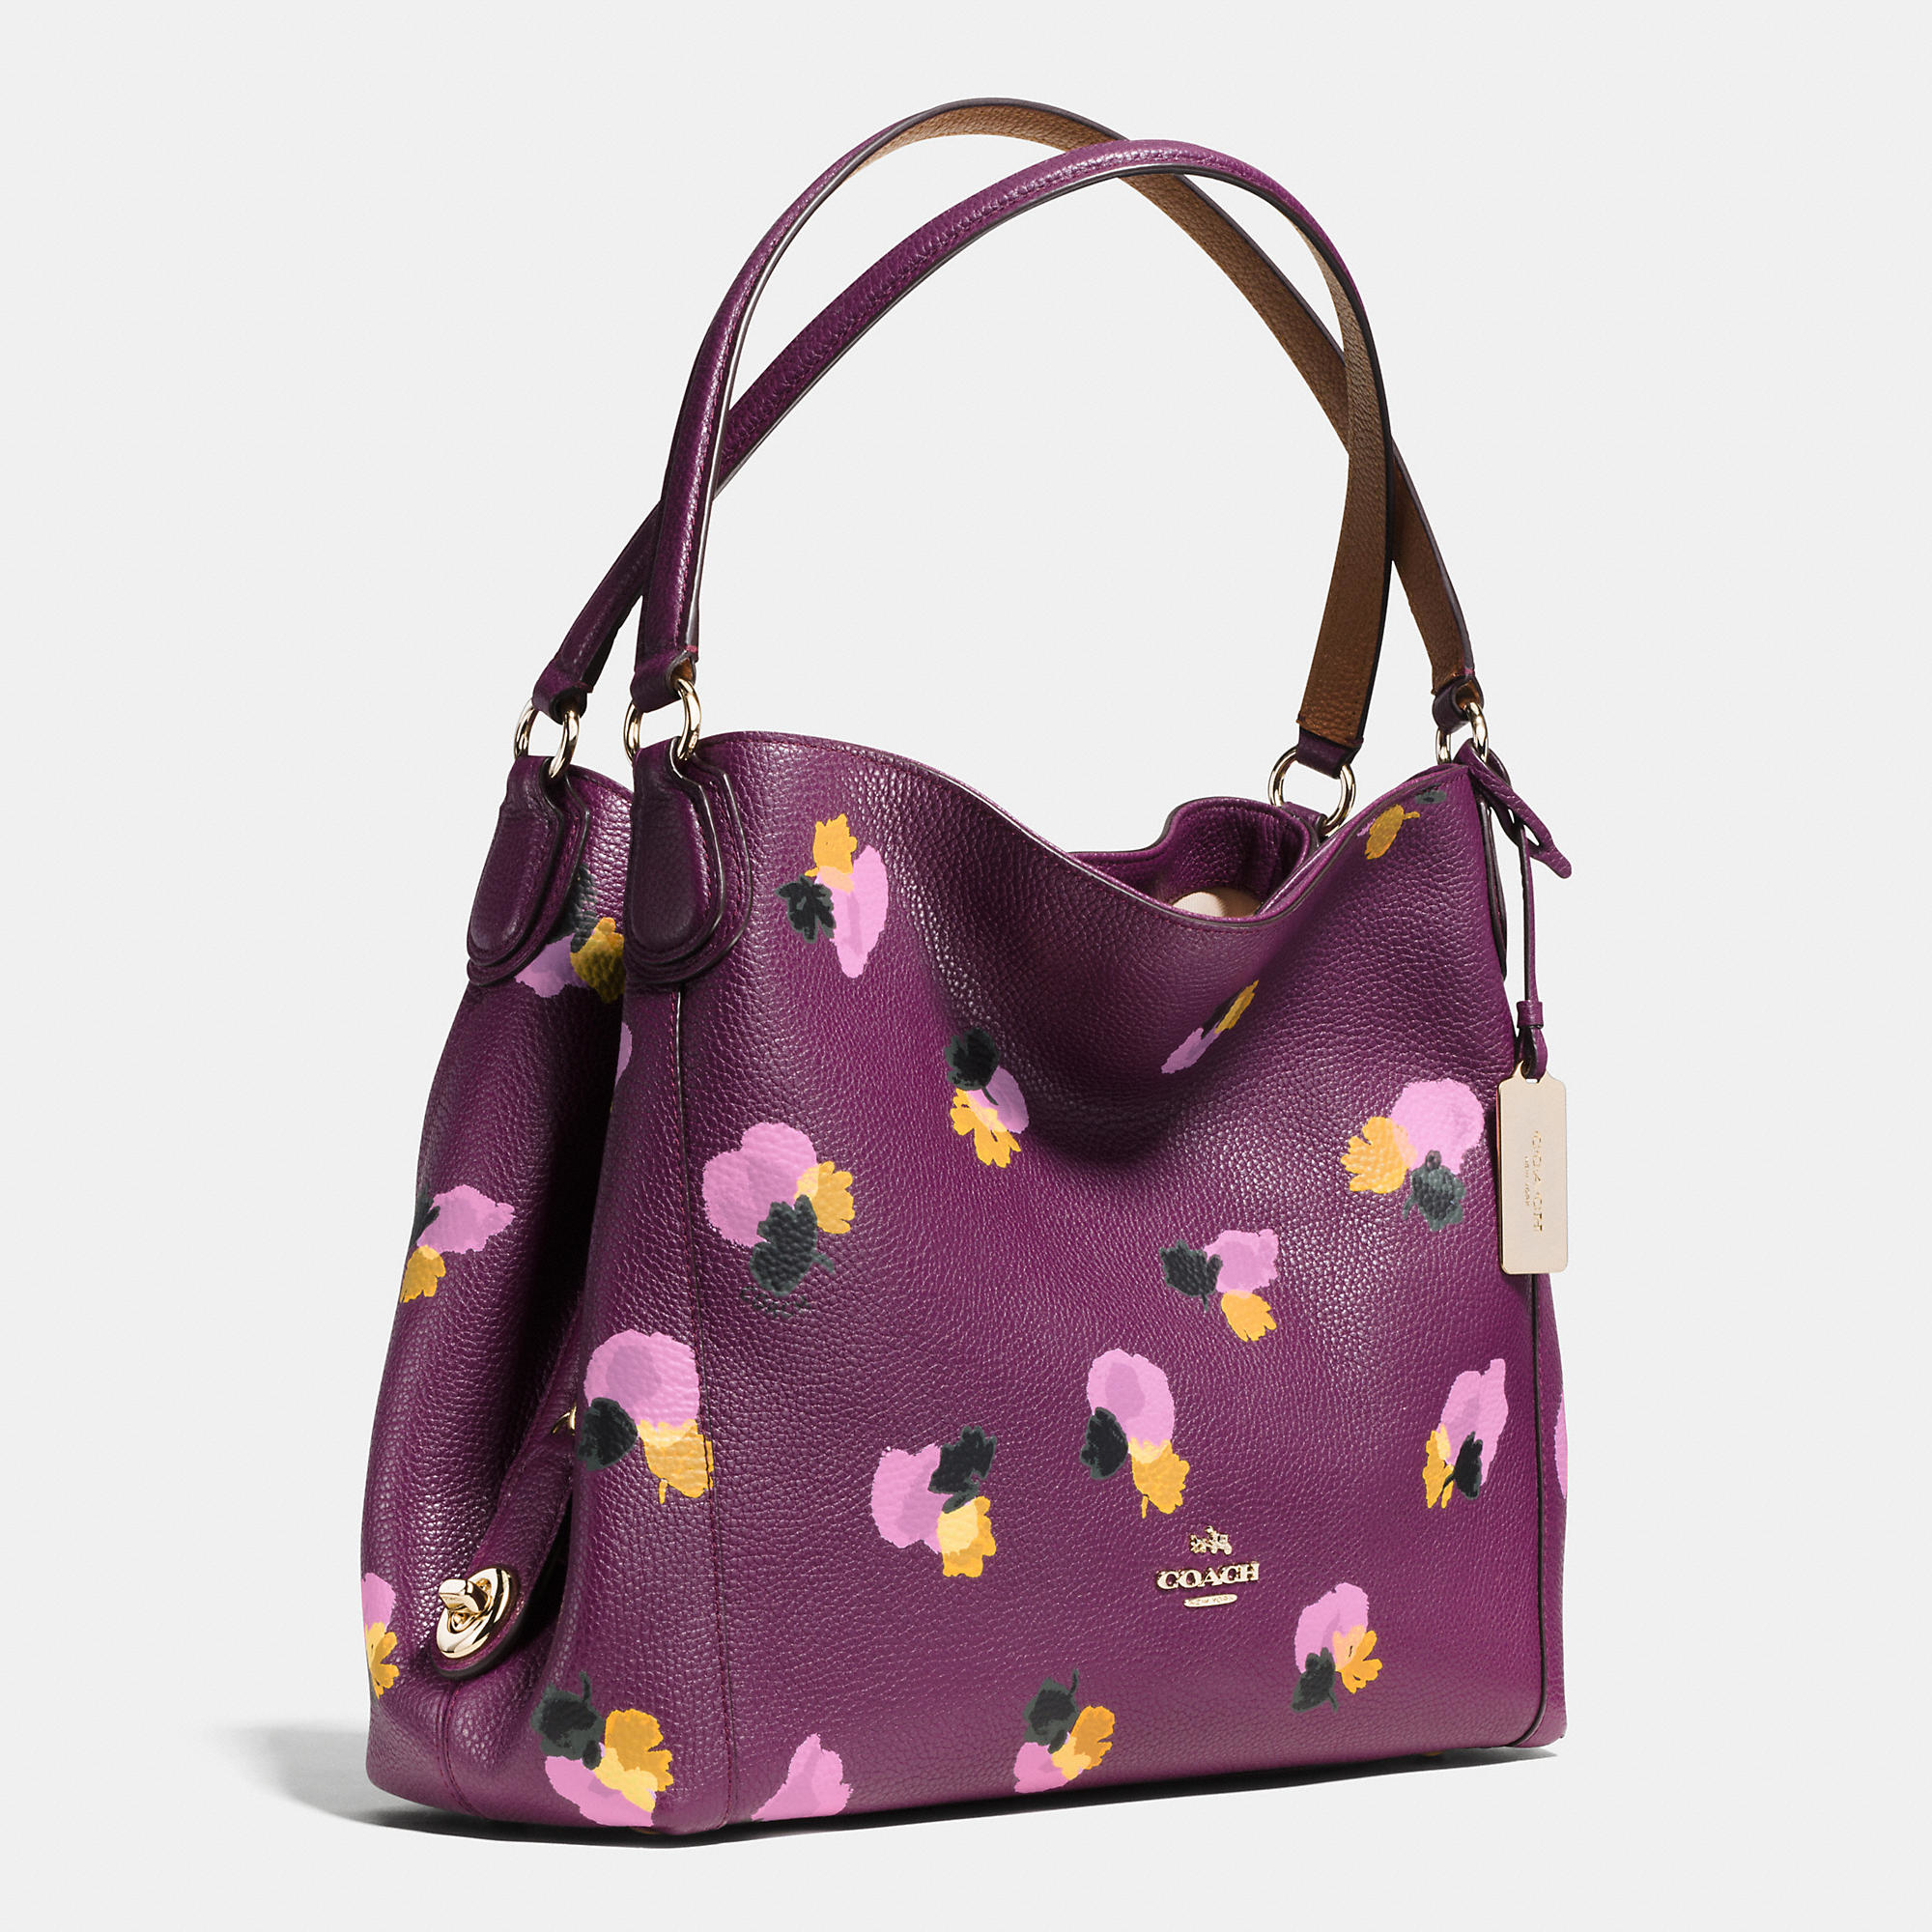 Coach Floral Print Bag / NWT COACH PRAIRIE SATCHEL LEATHER BAG HANDBAG ...